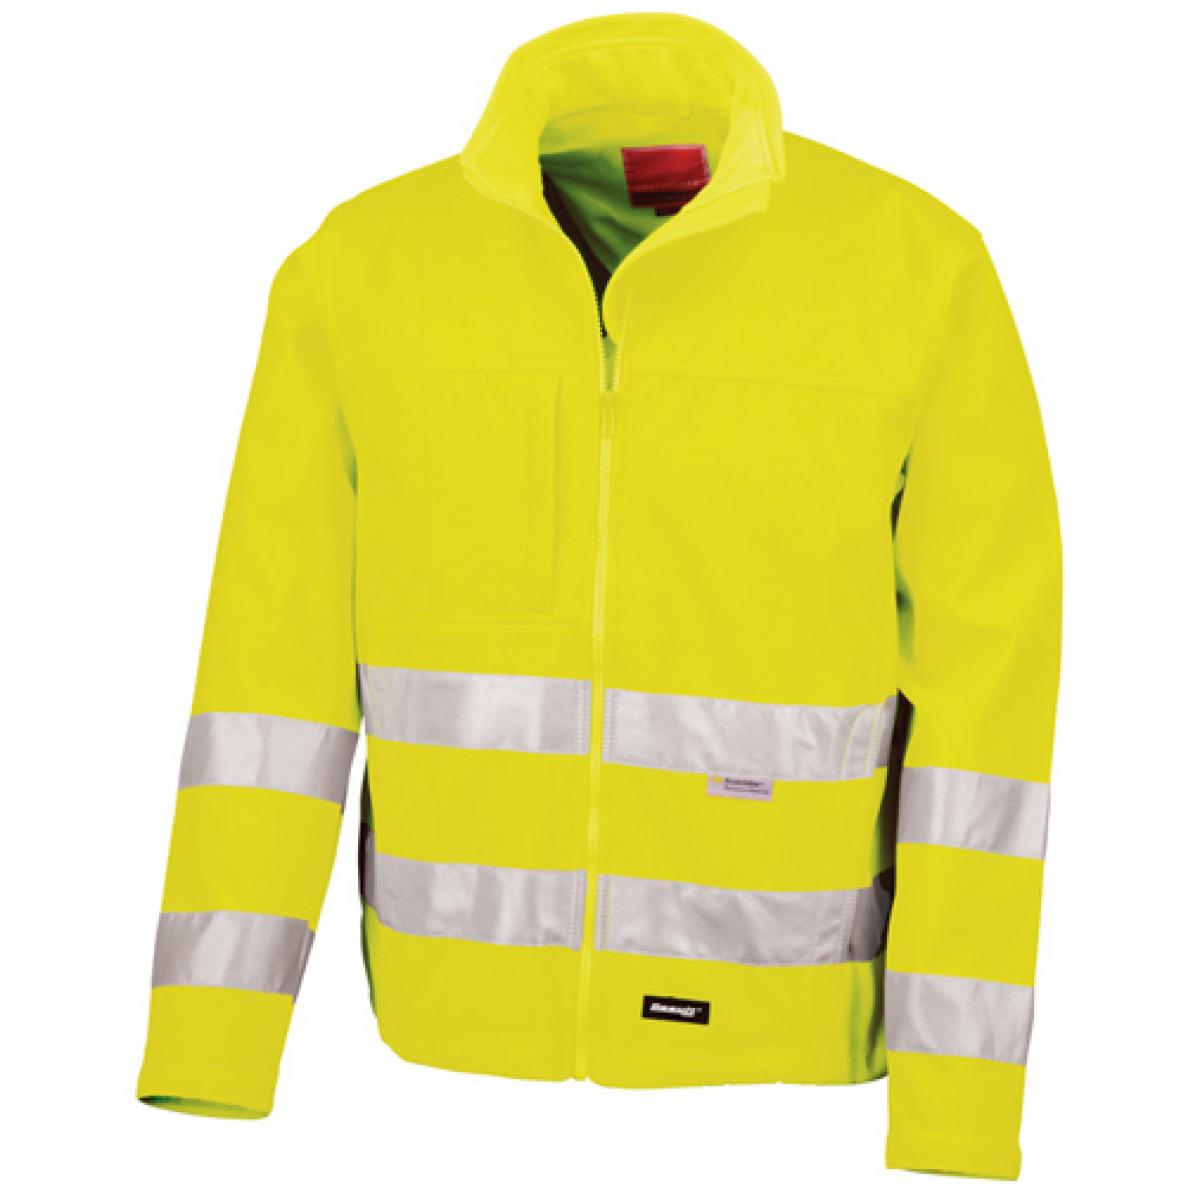 Hersteller: Result Herstellernummer: R117X Artikelbezeichnung: High-Vis Softshell Arbeits Jacke | ISO EN20471:2013 Klasse 2 Farbe: Fluorescent Yellow